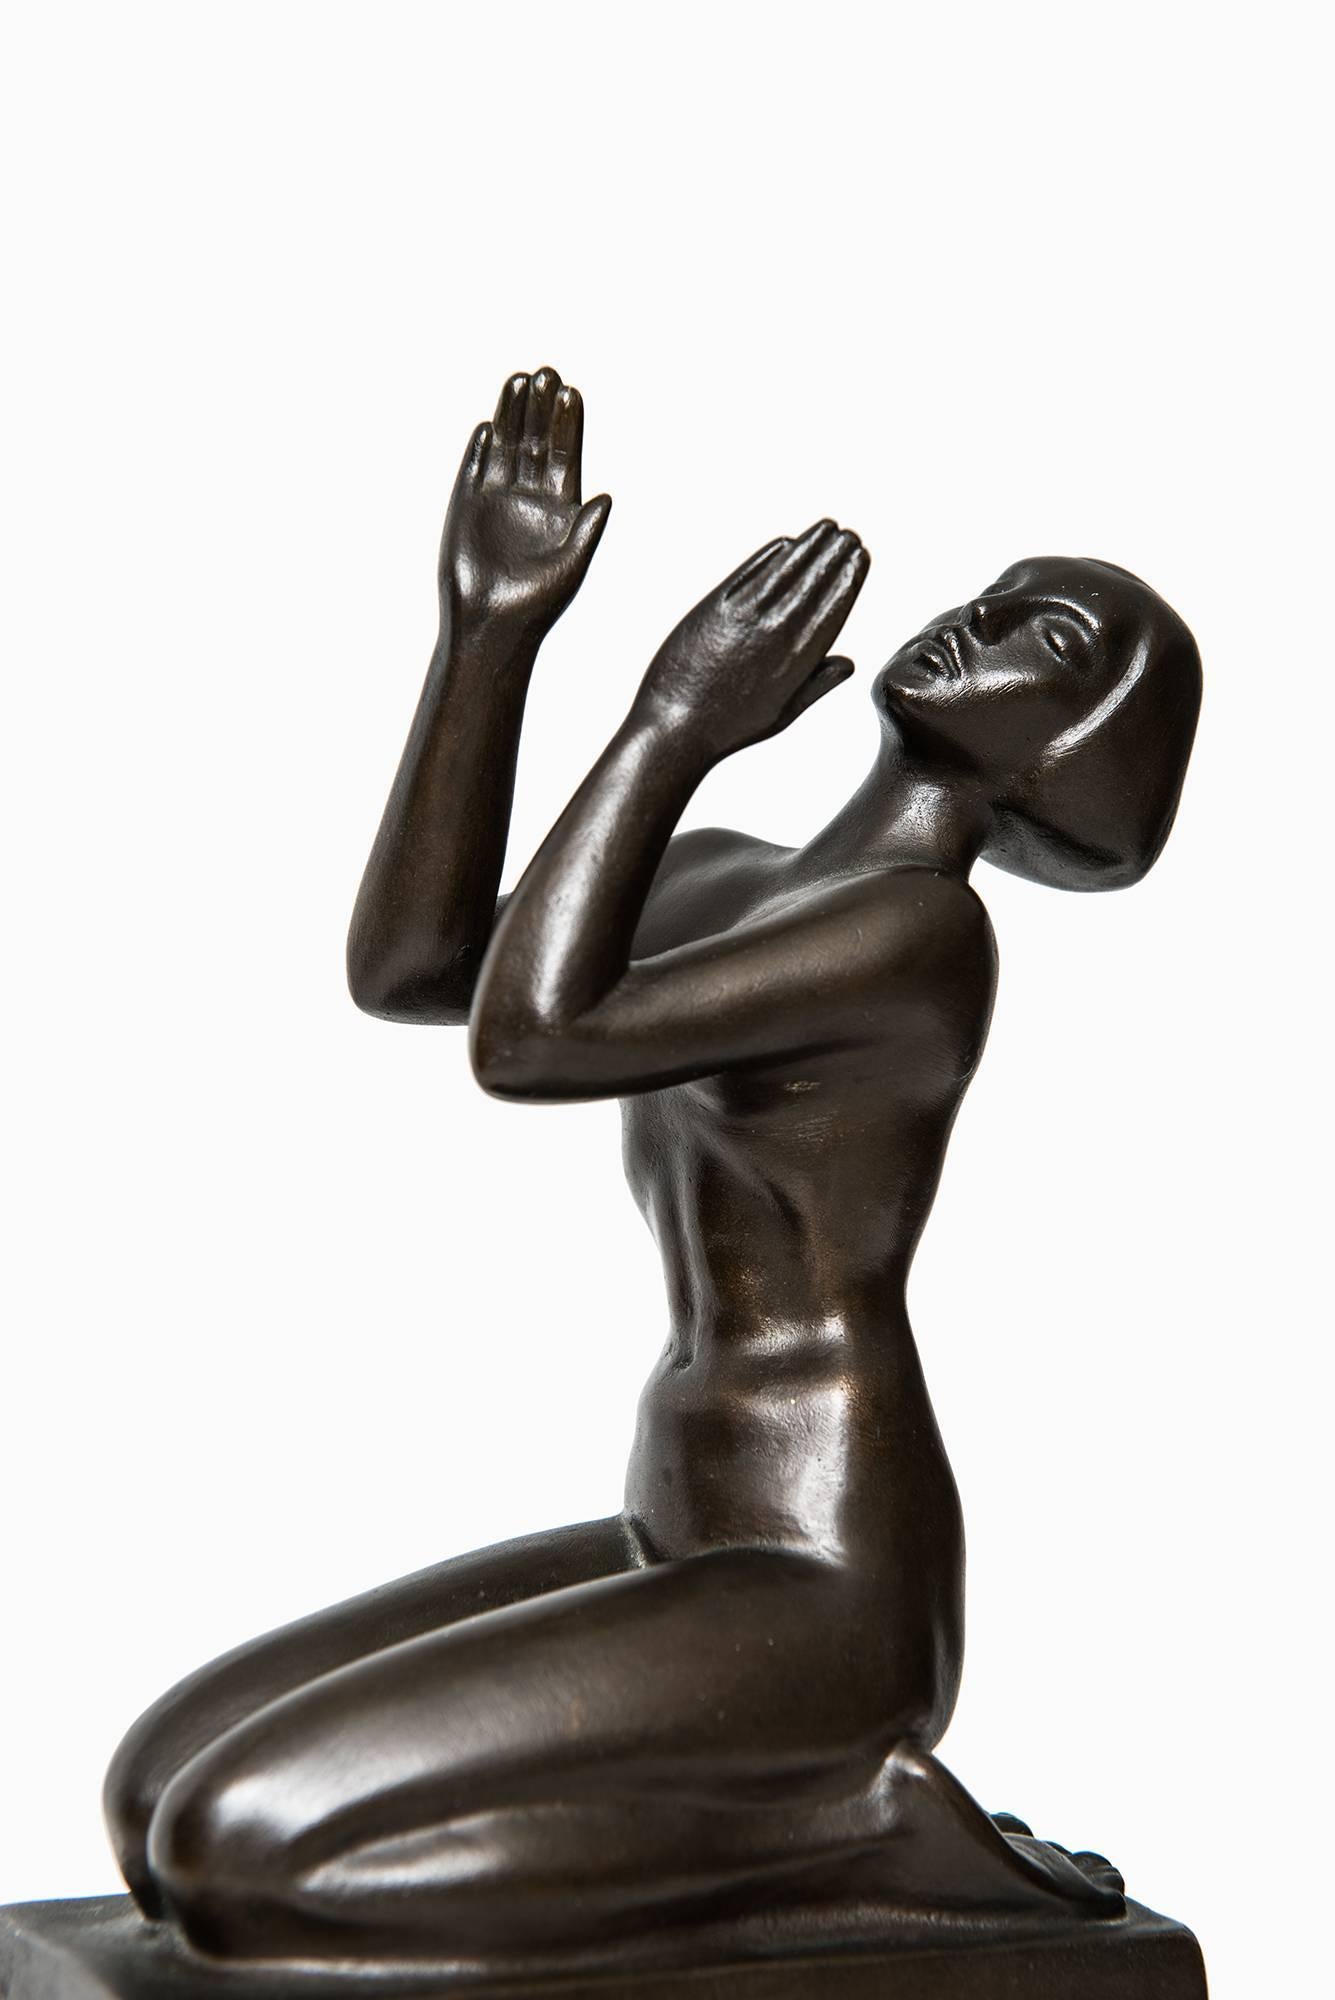 Scandinavian Modern Knut Jern Sculpture in Bronze by Otto Meyers Foundry in Sweden